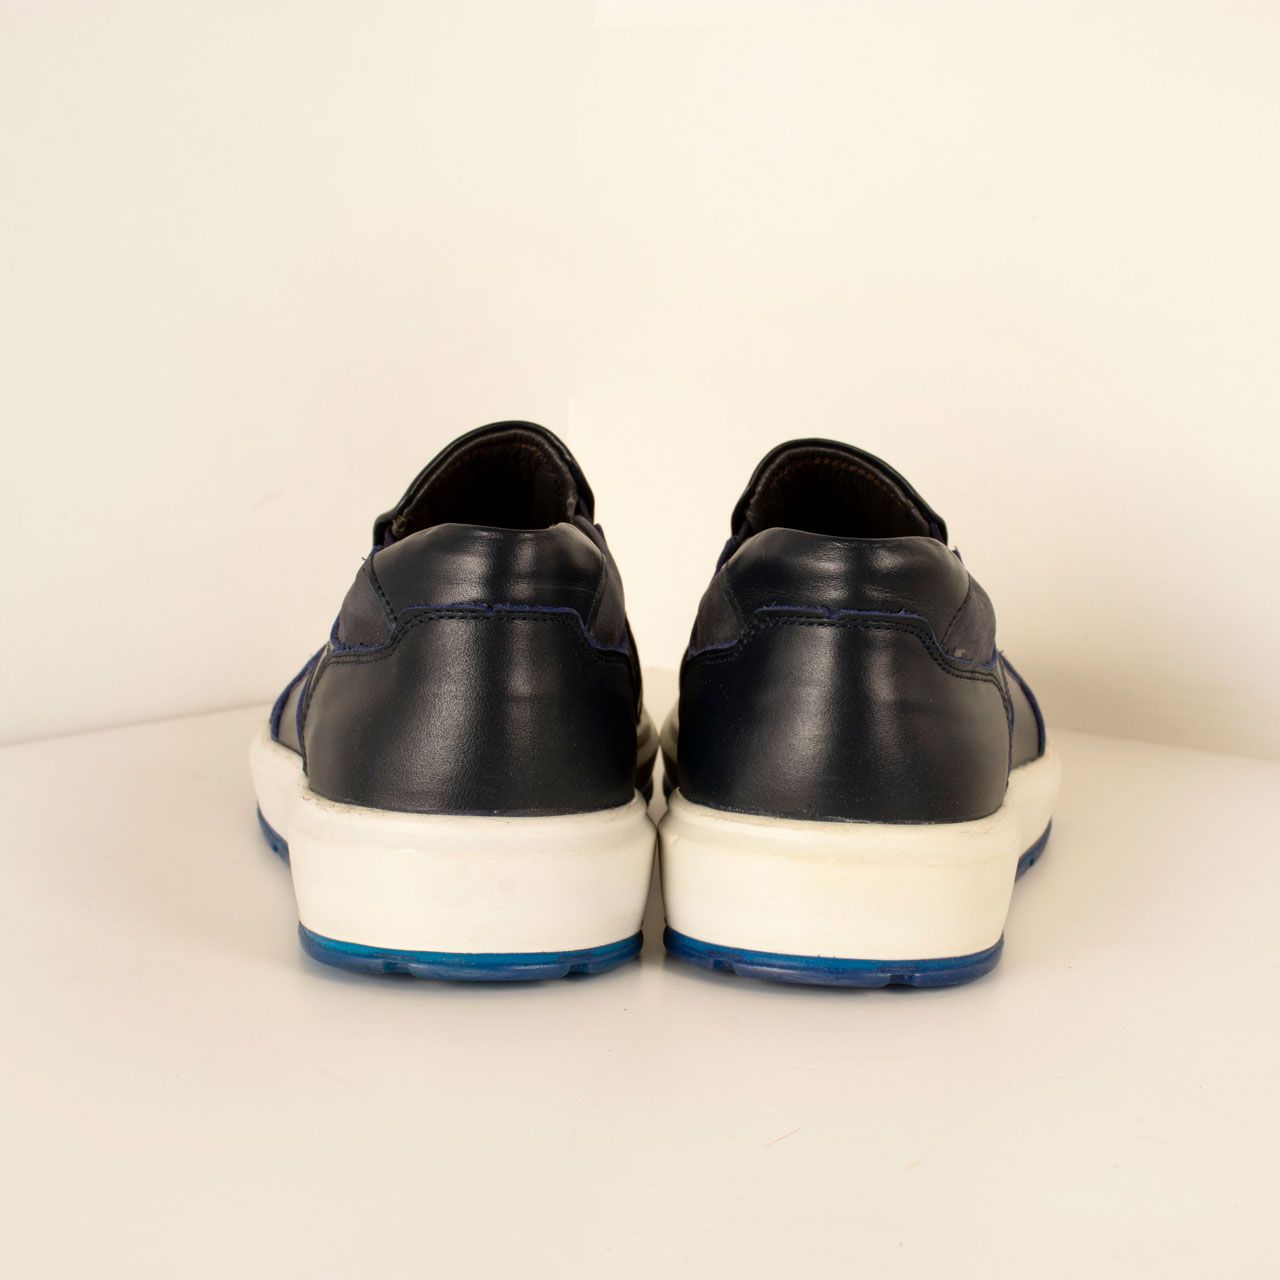  کفش روزمره مردانه پارینه چرم مدل SHO194-11 -  - 4